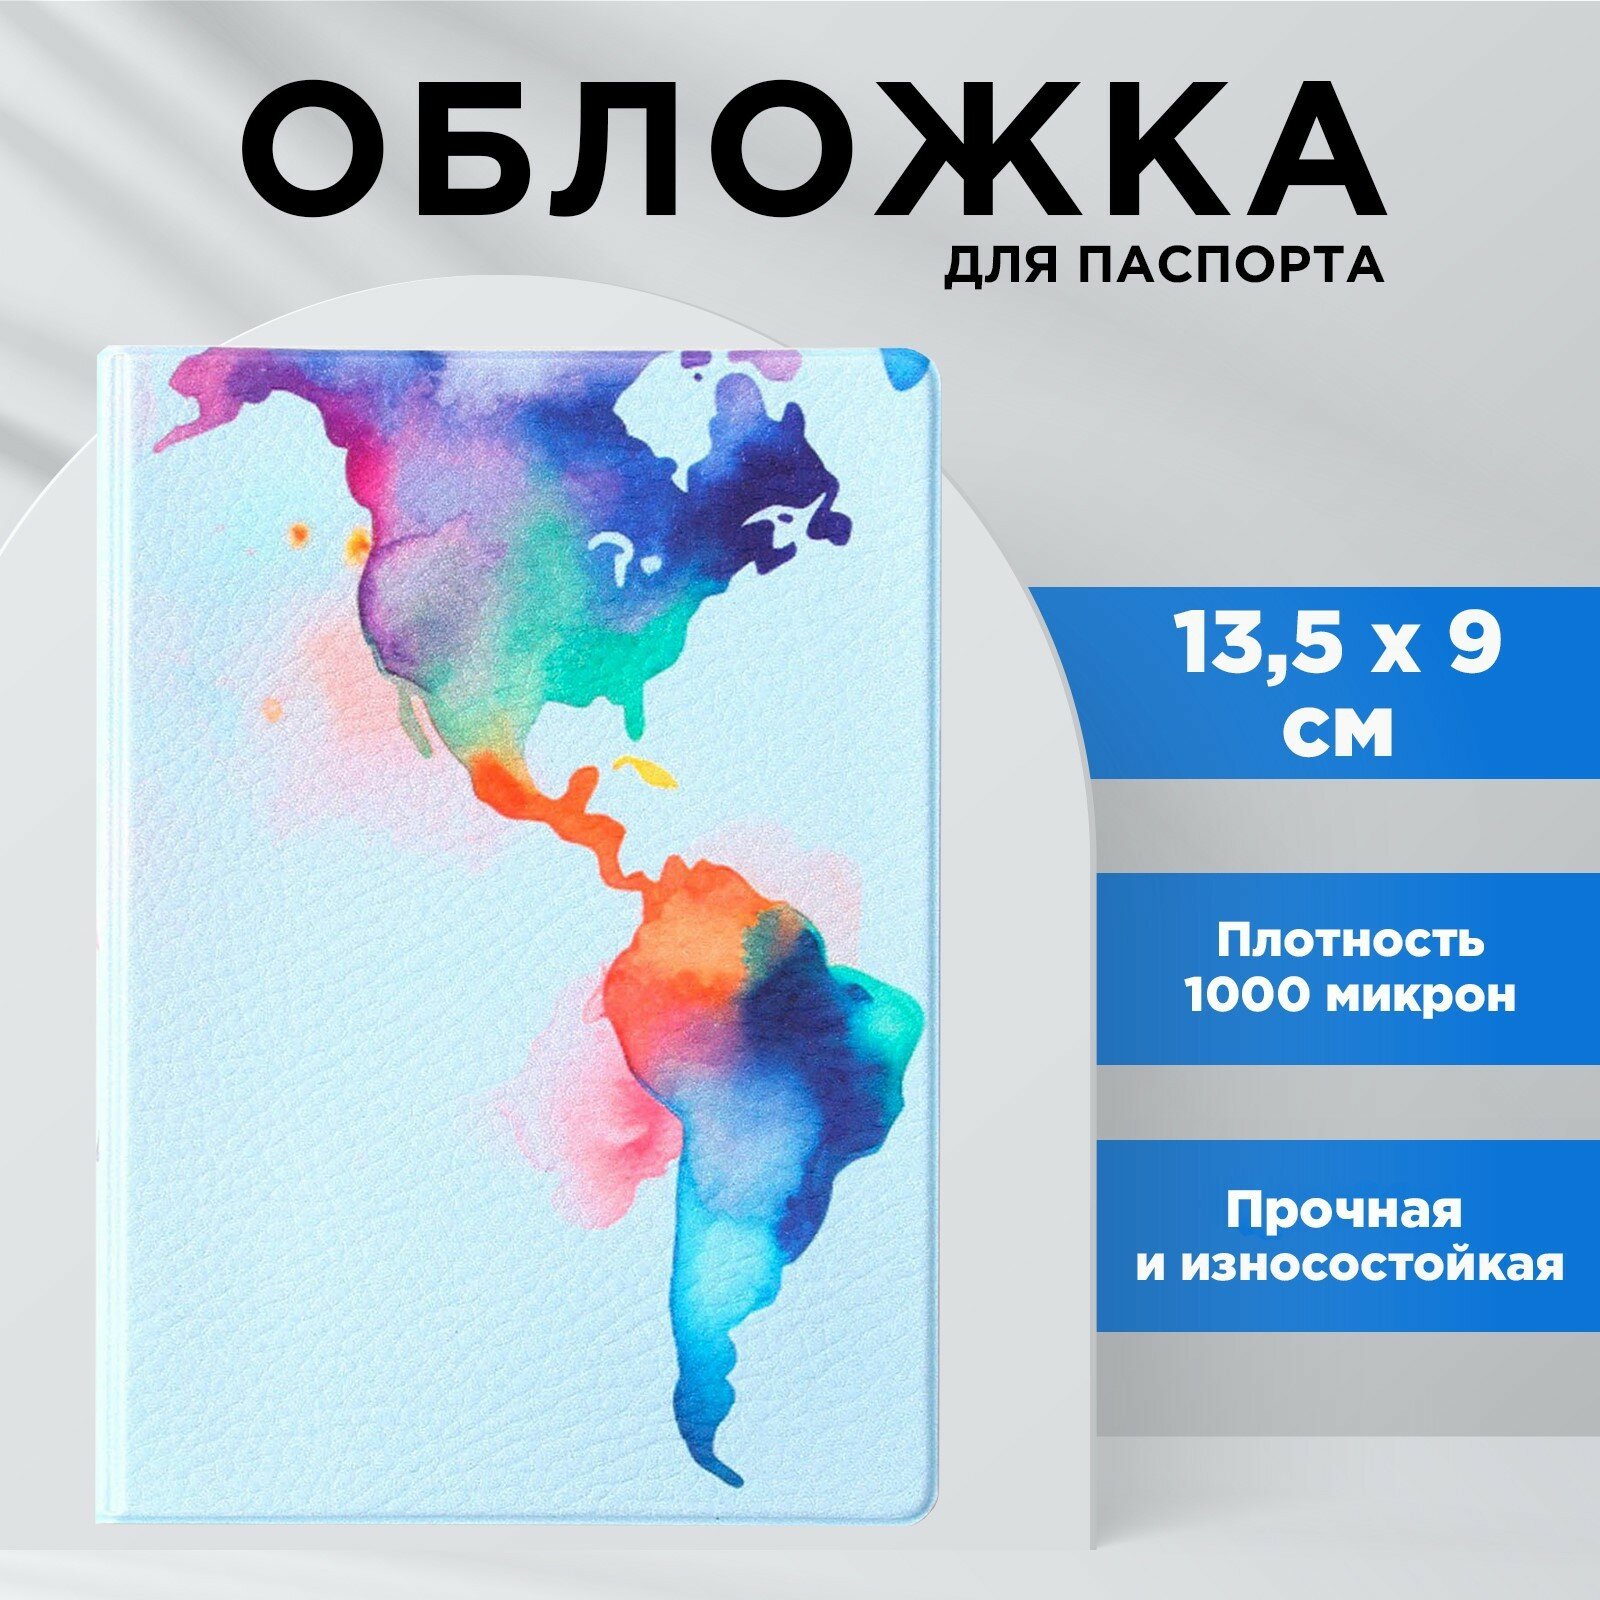 Обложка для паспорта NAZAMOK Обложка на паспорт 9761361, голубой